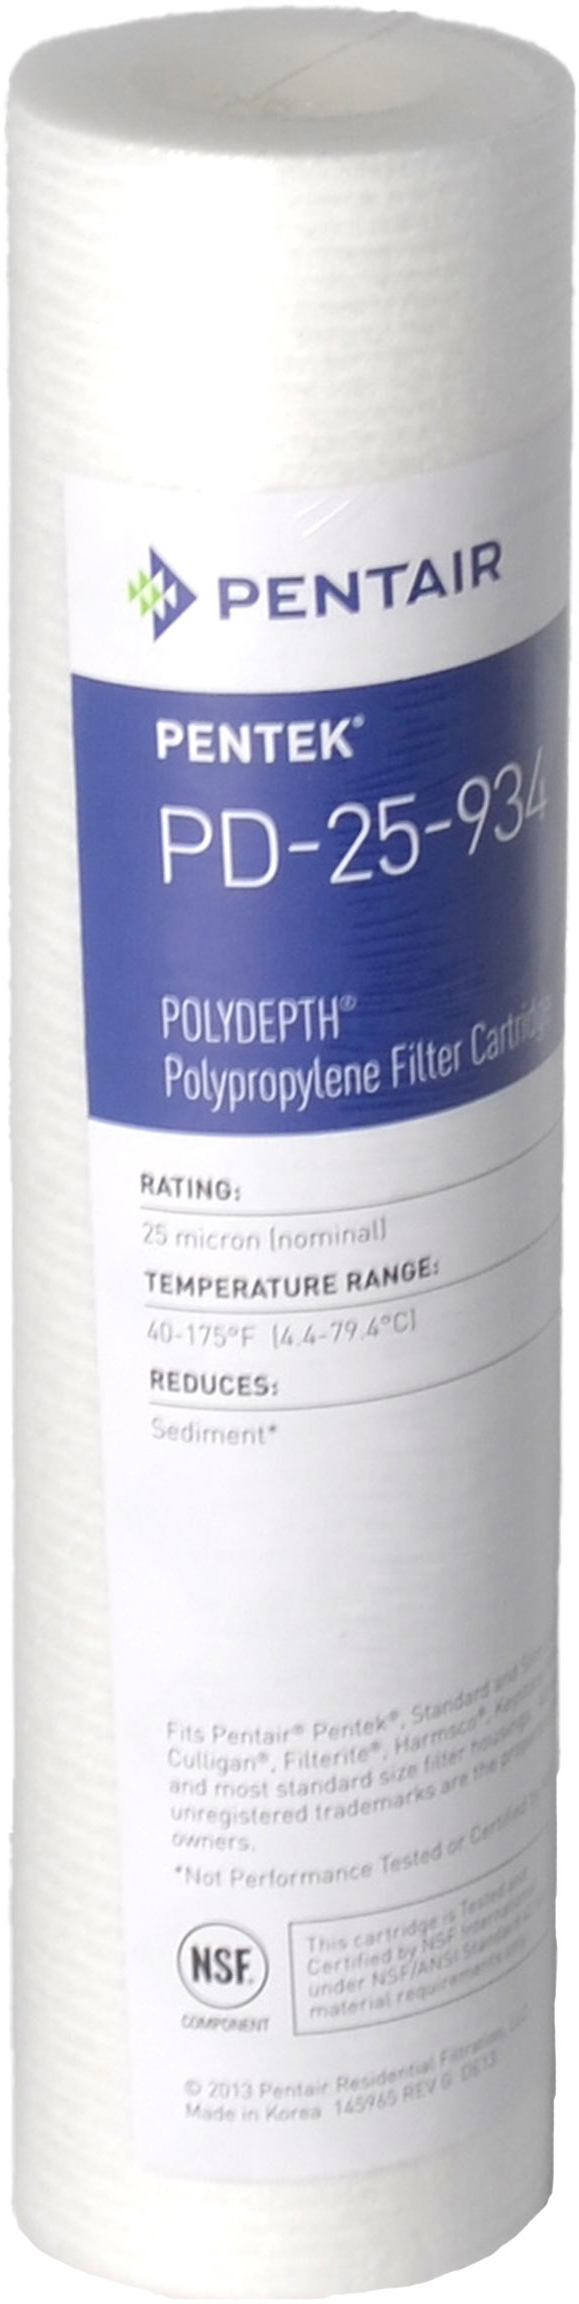 Картридж для фильтра Pentek PD-25-934 Polydepth (155751-43) в интернет-магазине, главное фото